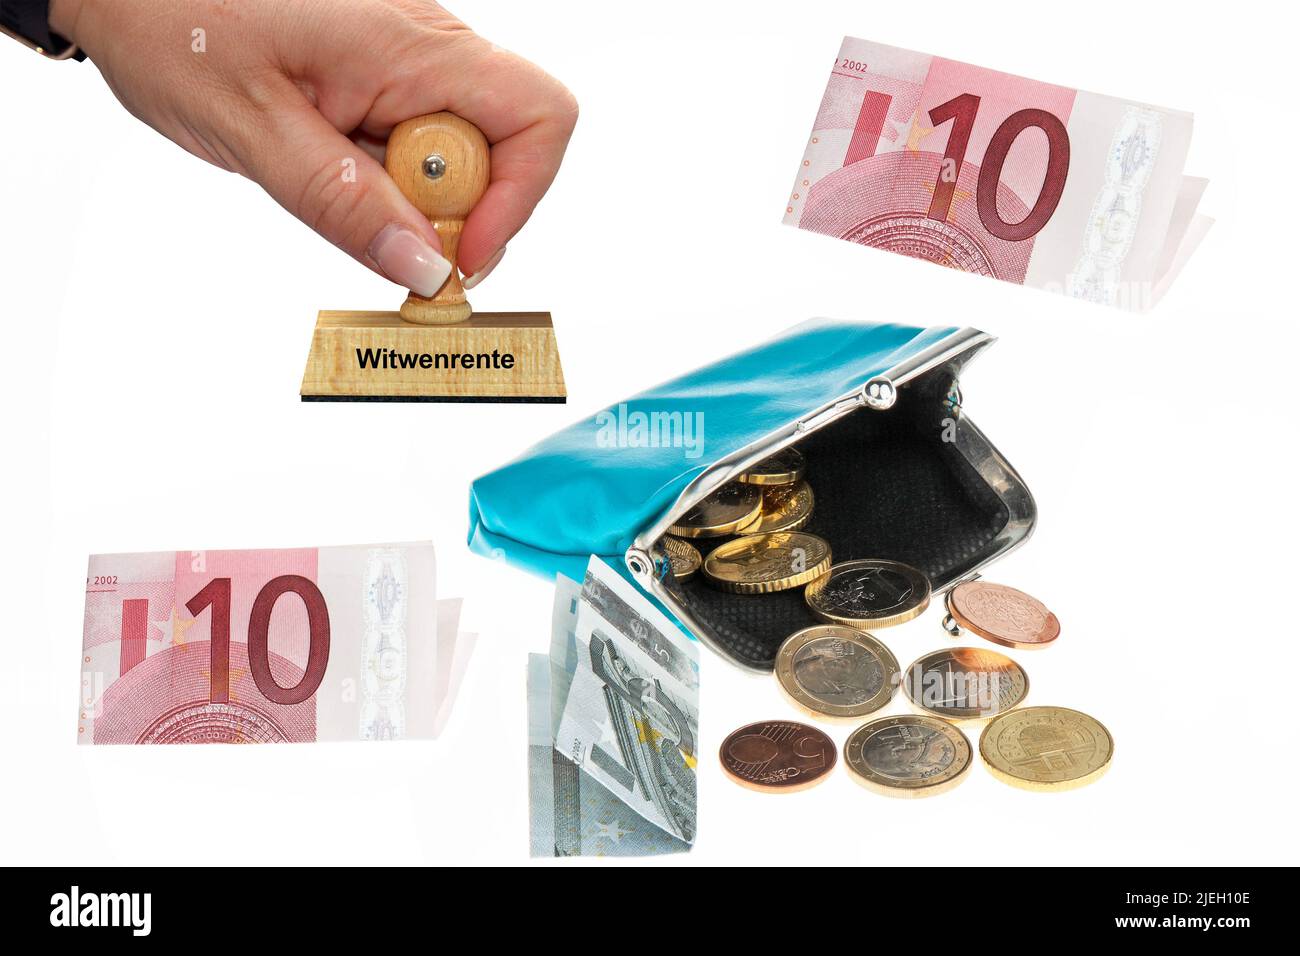 Witwenrente, Eine Geldbörse mit Euro-Geldscheinen und Münzen, Stempel, Frauenhand, Holzstempel, Foto de stock